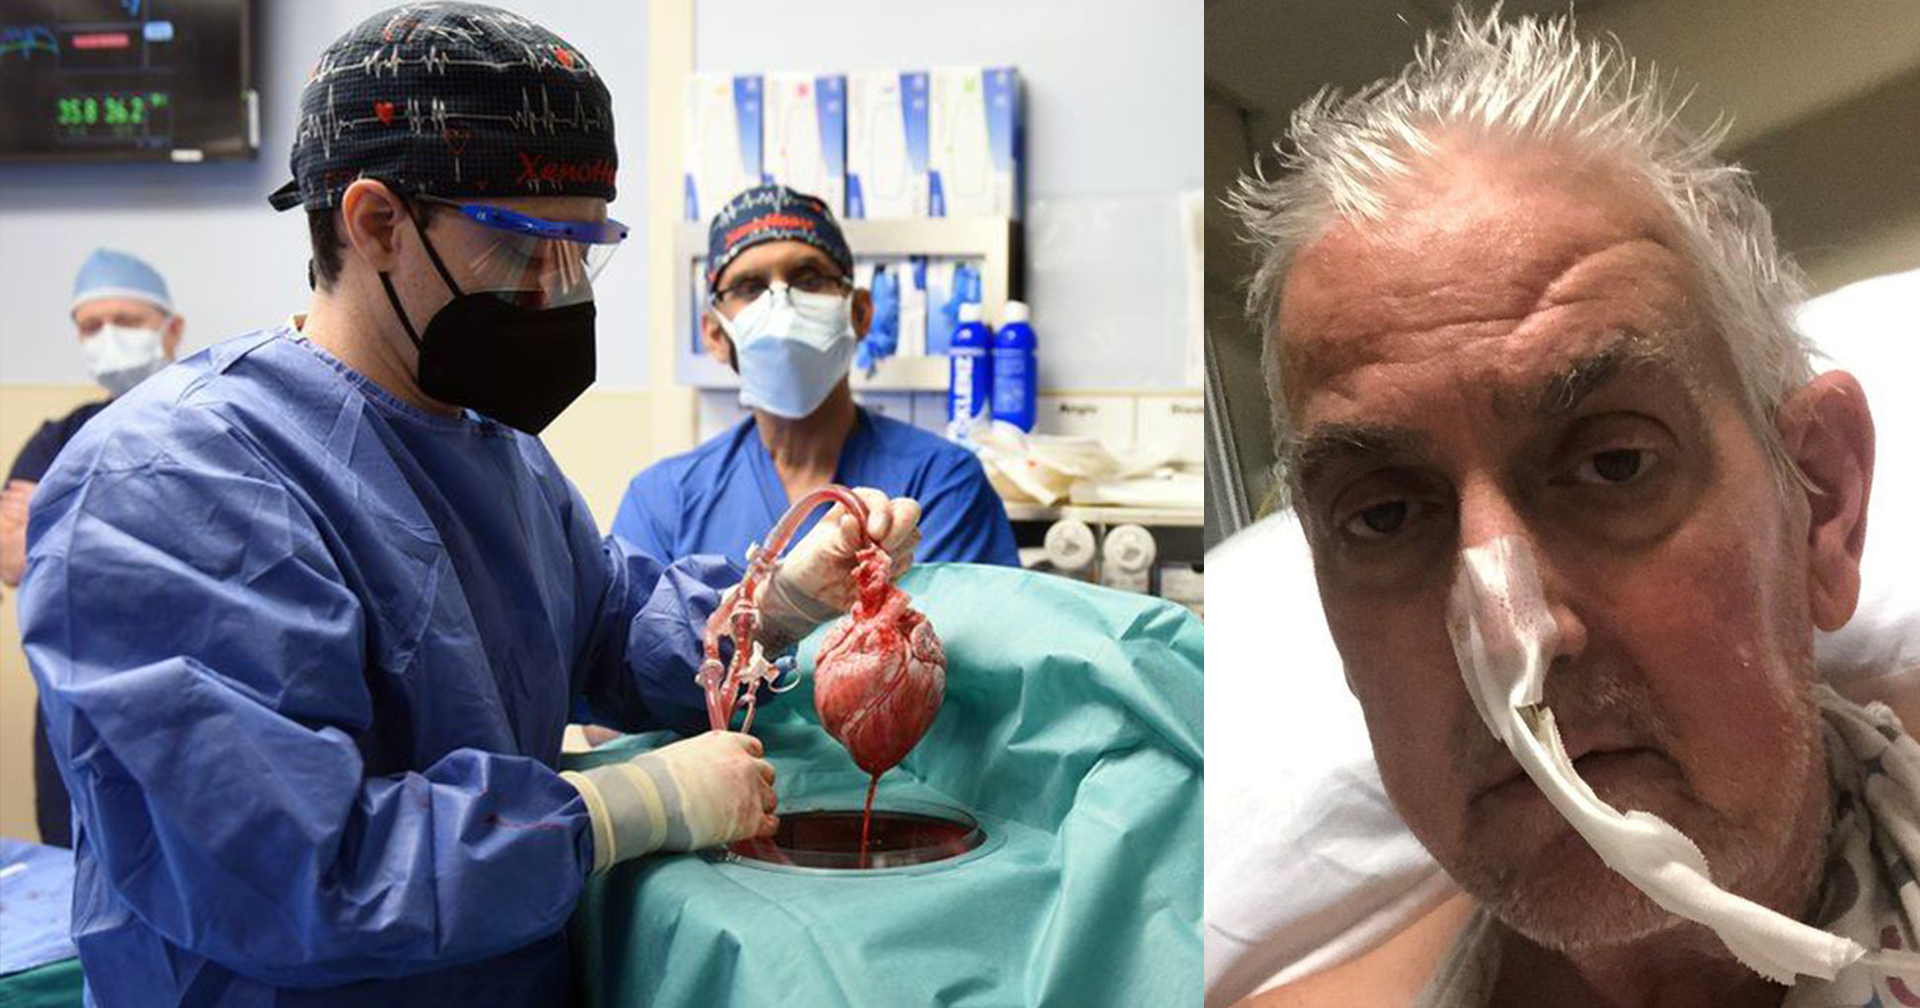 เดวิด เบนเน็ตต์ มนุษย์คนแรกของโลก ที่ได้รับ ‘หัวใจหมู’ จากการผ่าตัดปลูกถ่ายอวัยวะ